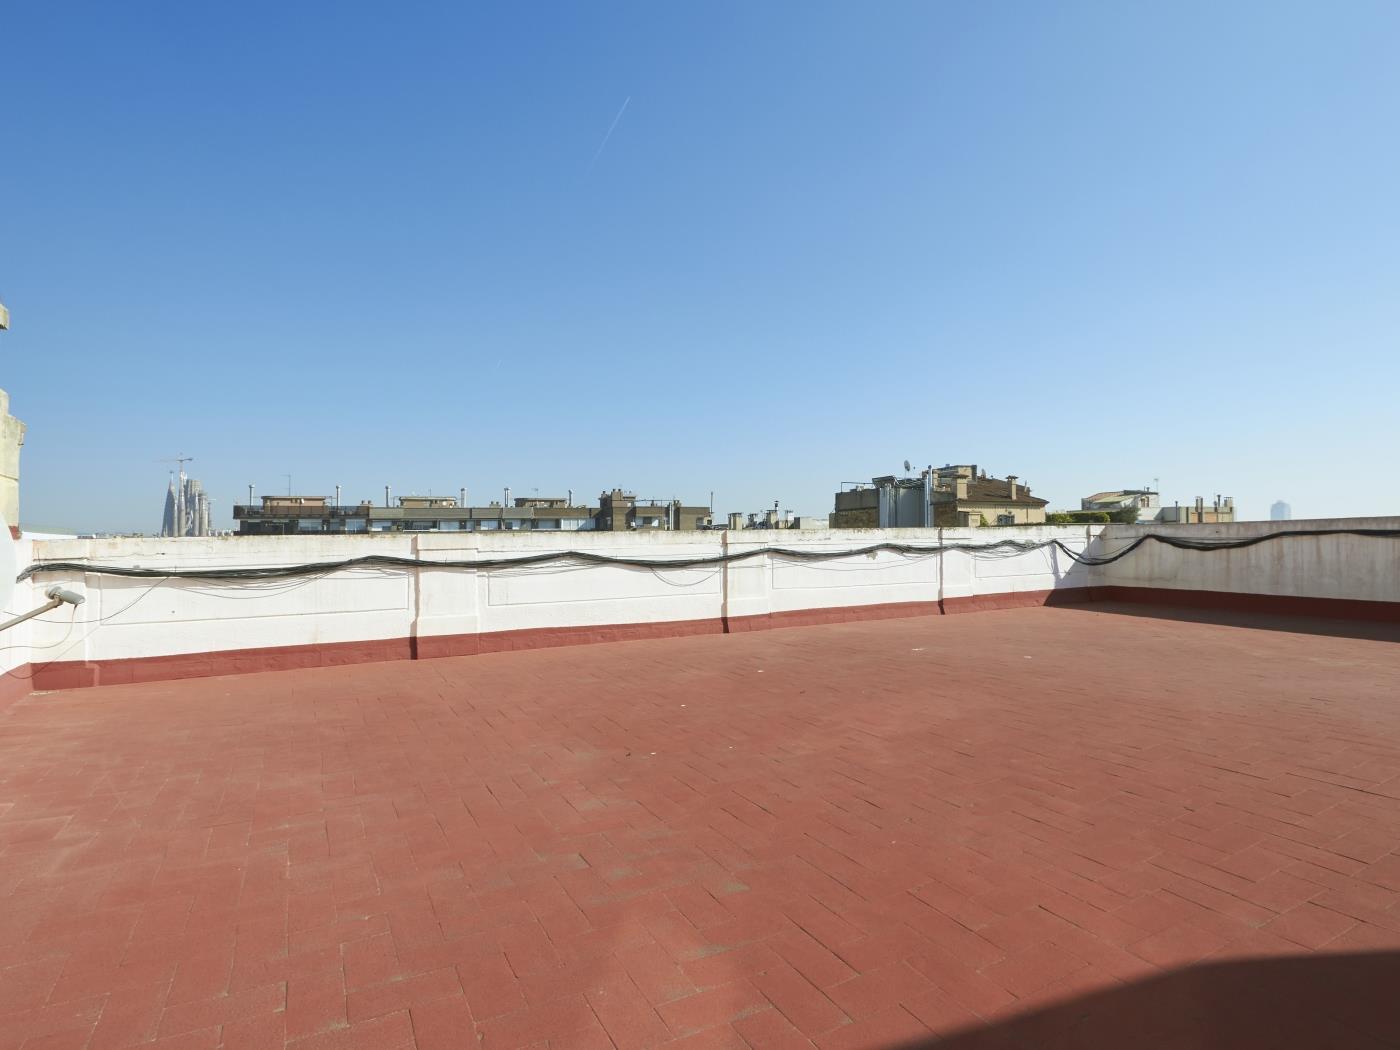 VENTA: Luminoso y renovado ático en el Eixample - Precio 579.000 € - My Space Barcelona Apartamentos